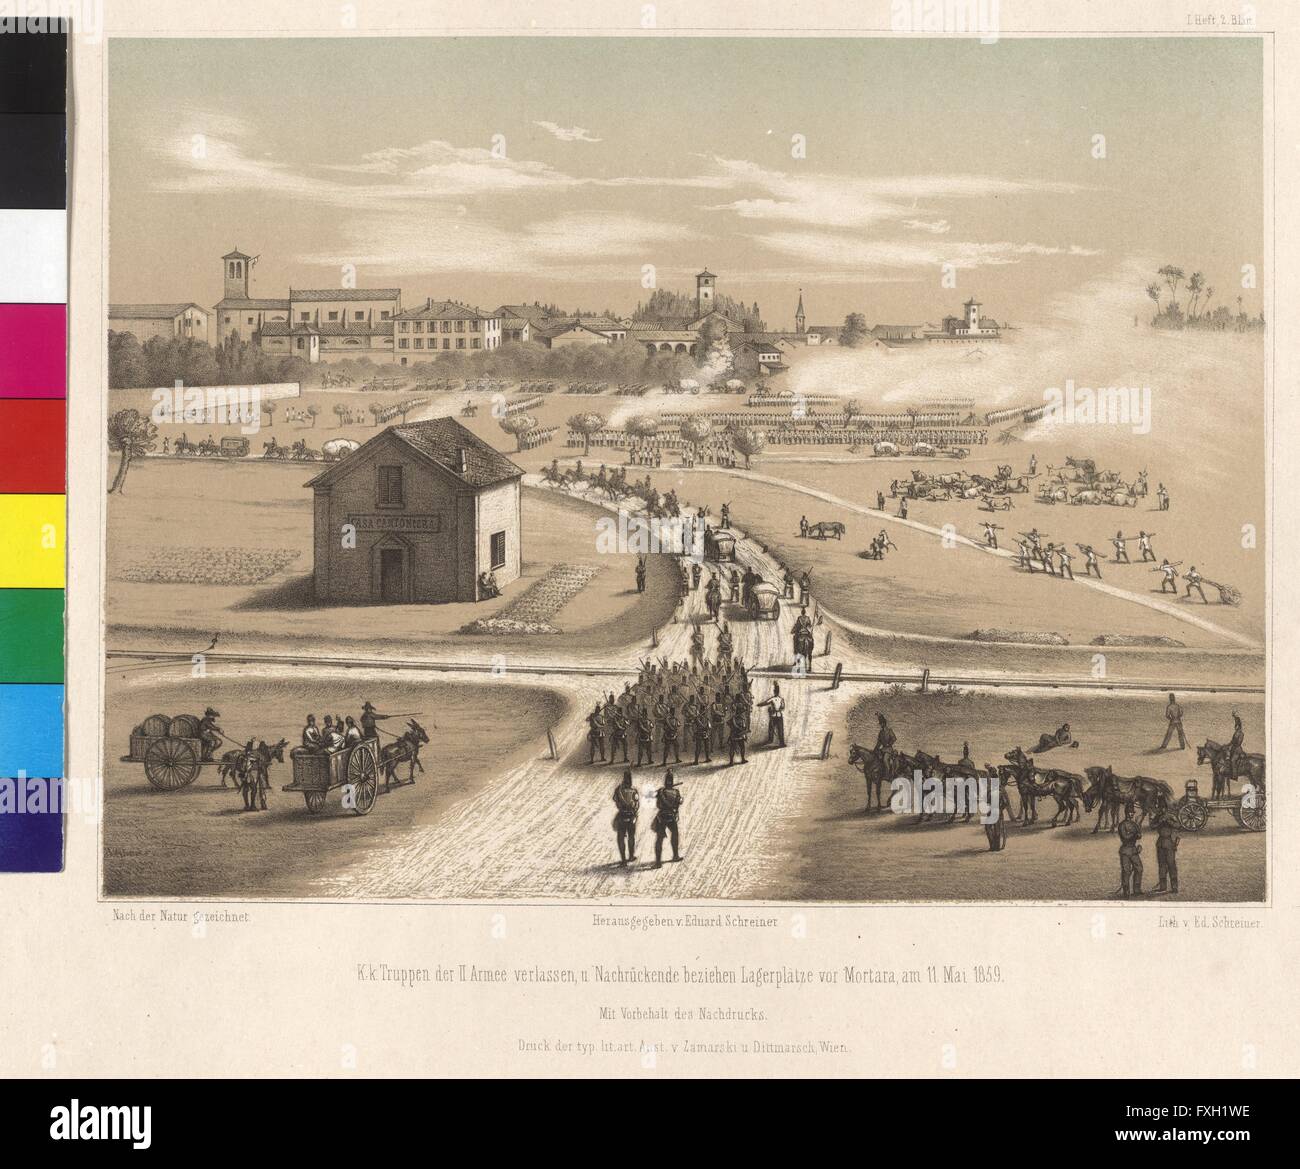 K.k. Truppen der II. Armee verlassen, und Nachrückende beziehen Lagerplätze vor Mortara, am 11. Mai 1859 Stock Photo